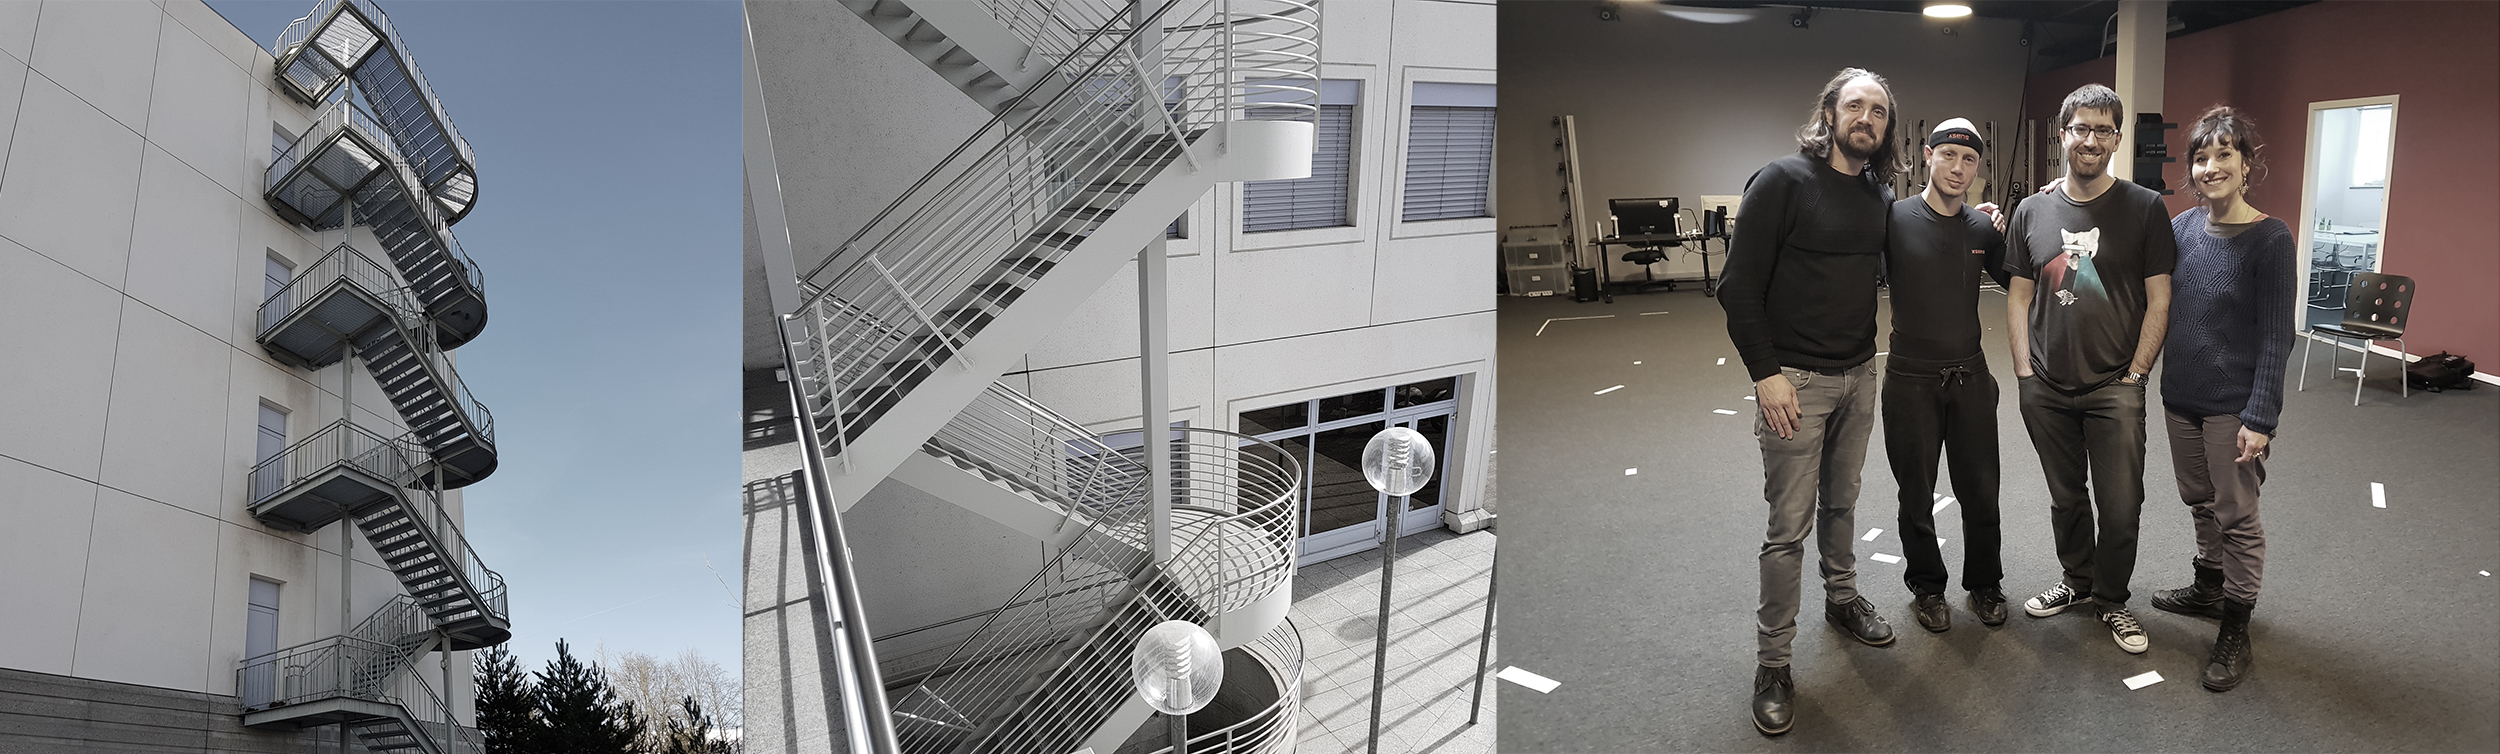 PIXI – Laboratoire d’imagerie et d’animation 3D, La Chaux-de-Fonds // pixilab.ch